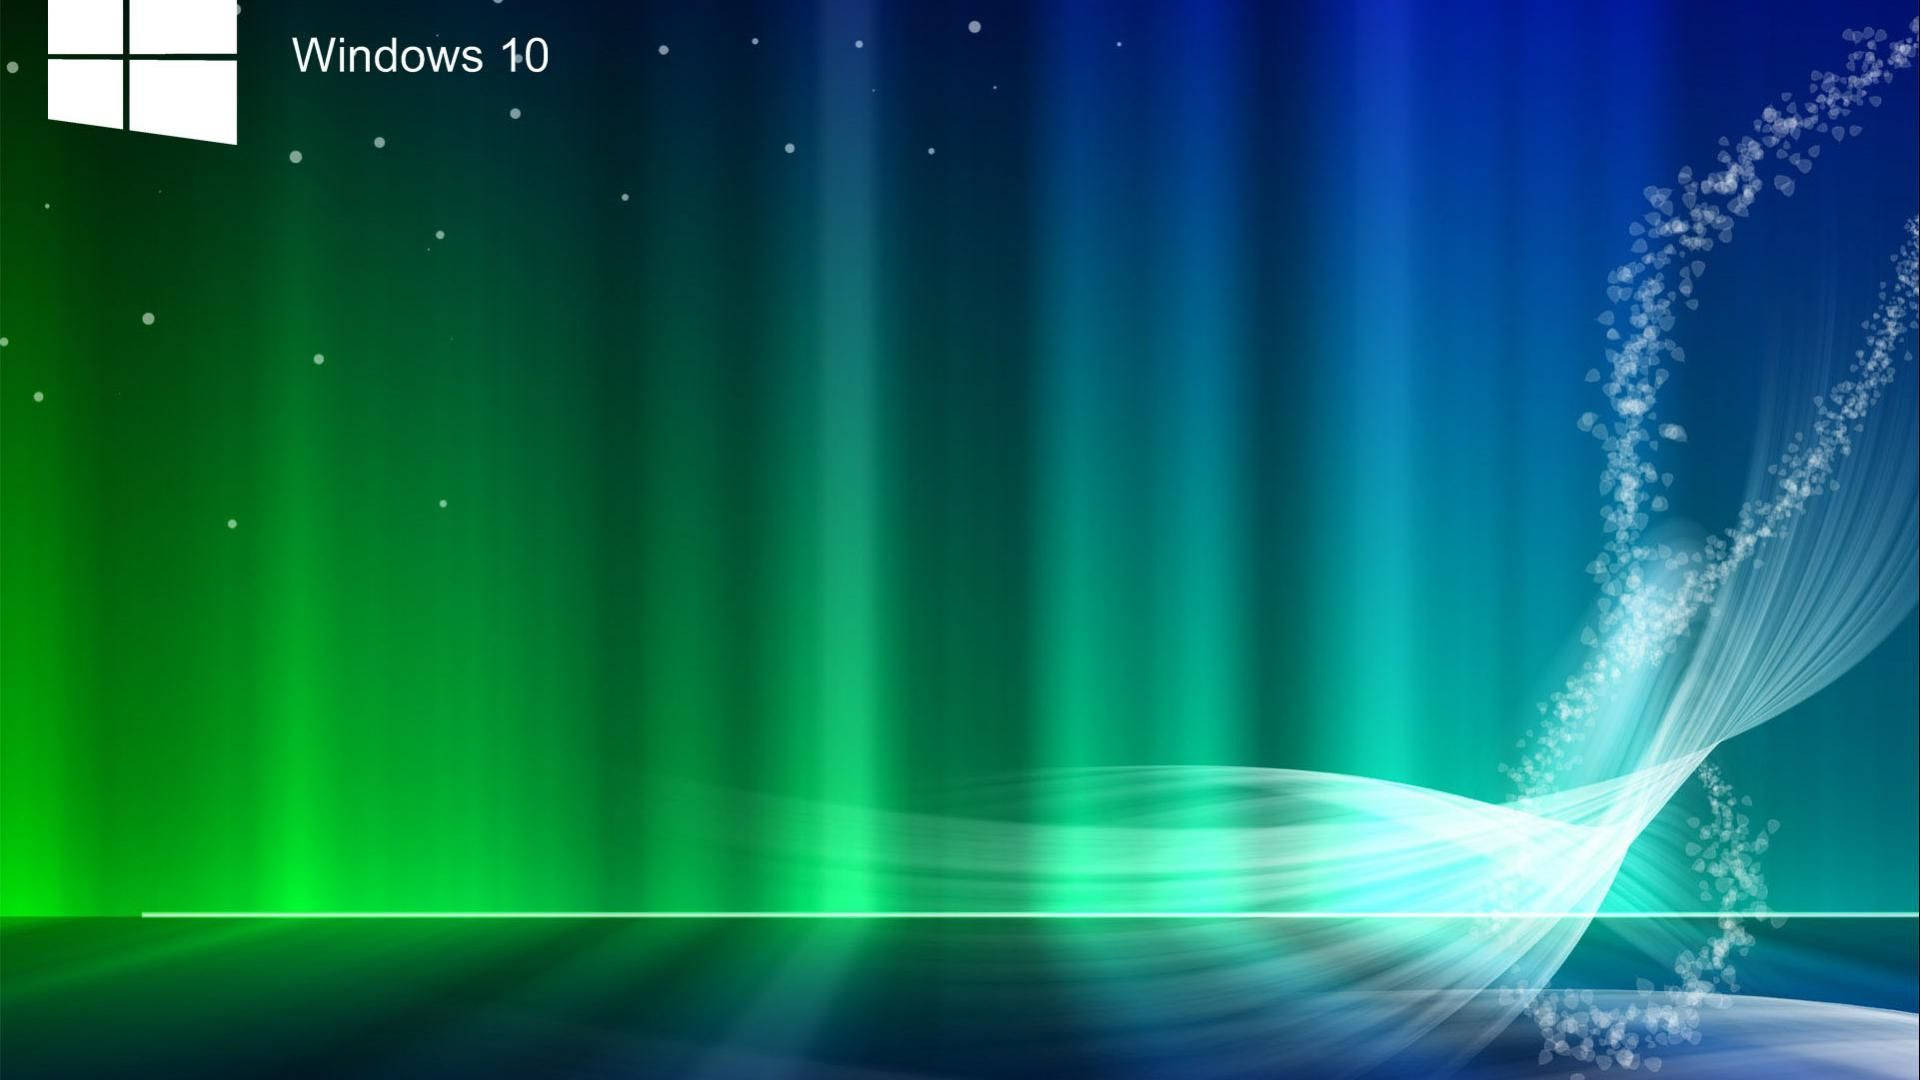 Windows 10 Hd Aurora Background